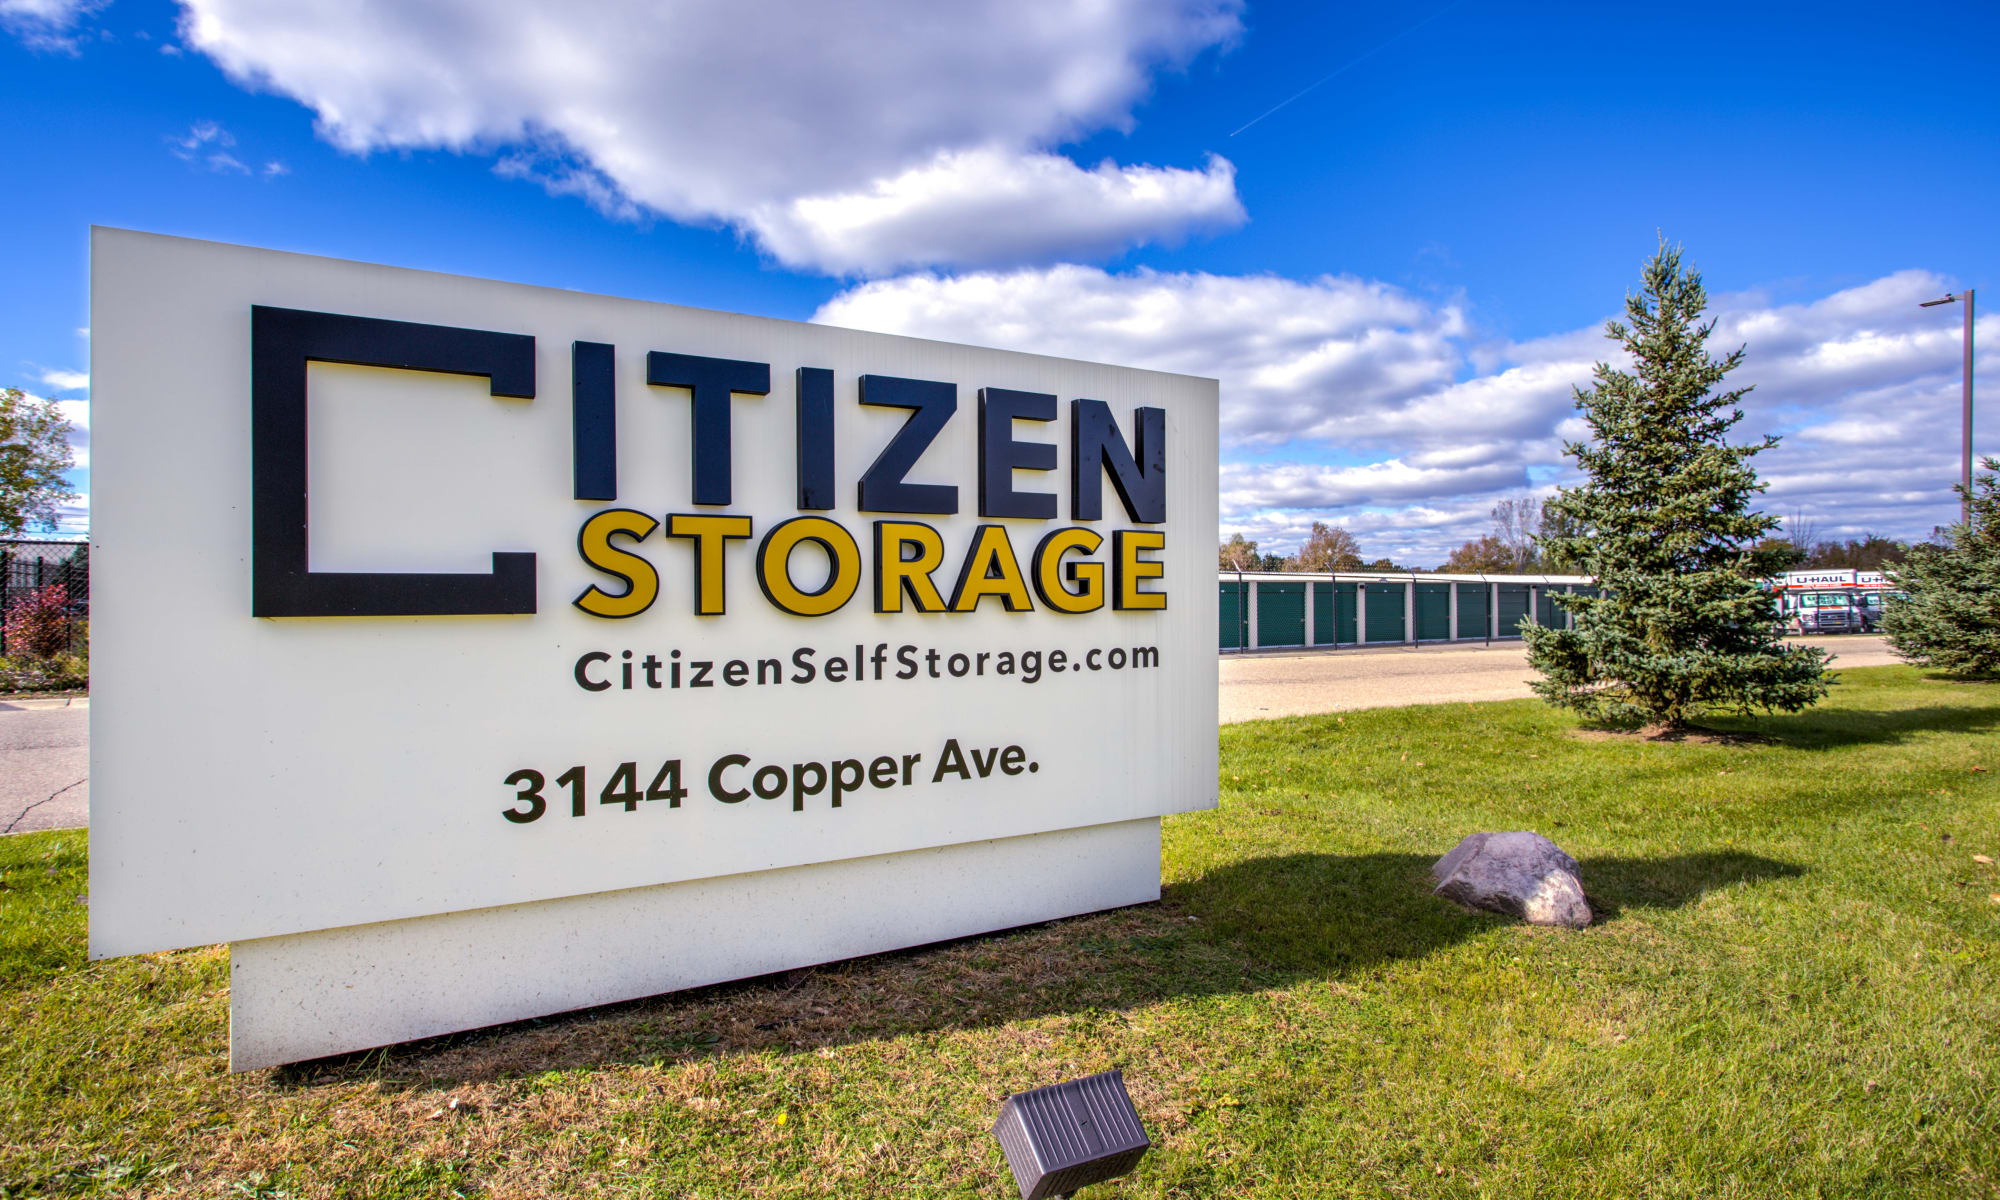 Citizen Storage in Fenton, Michigan